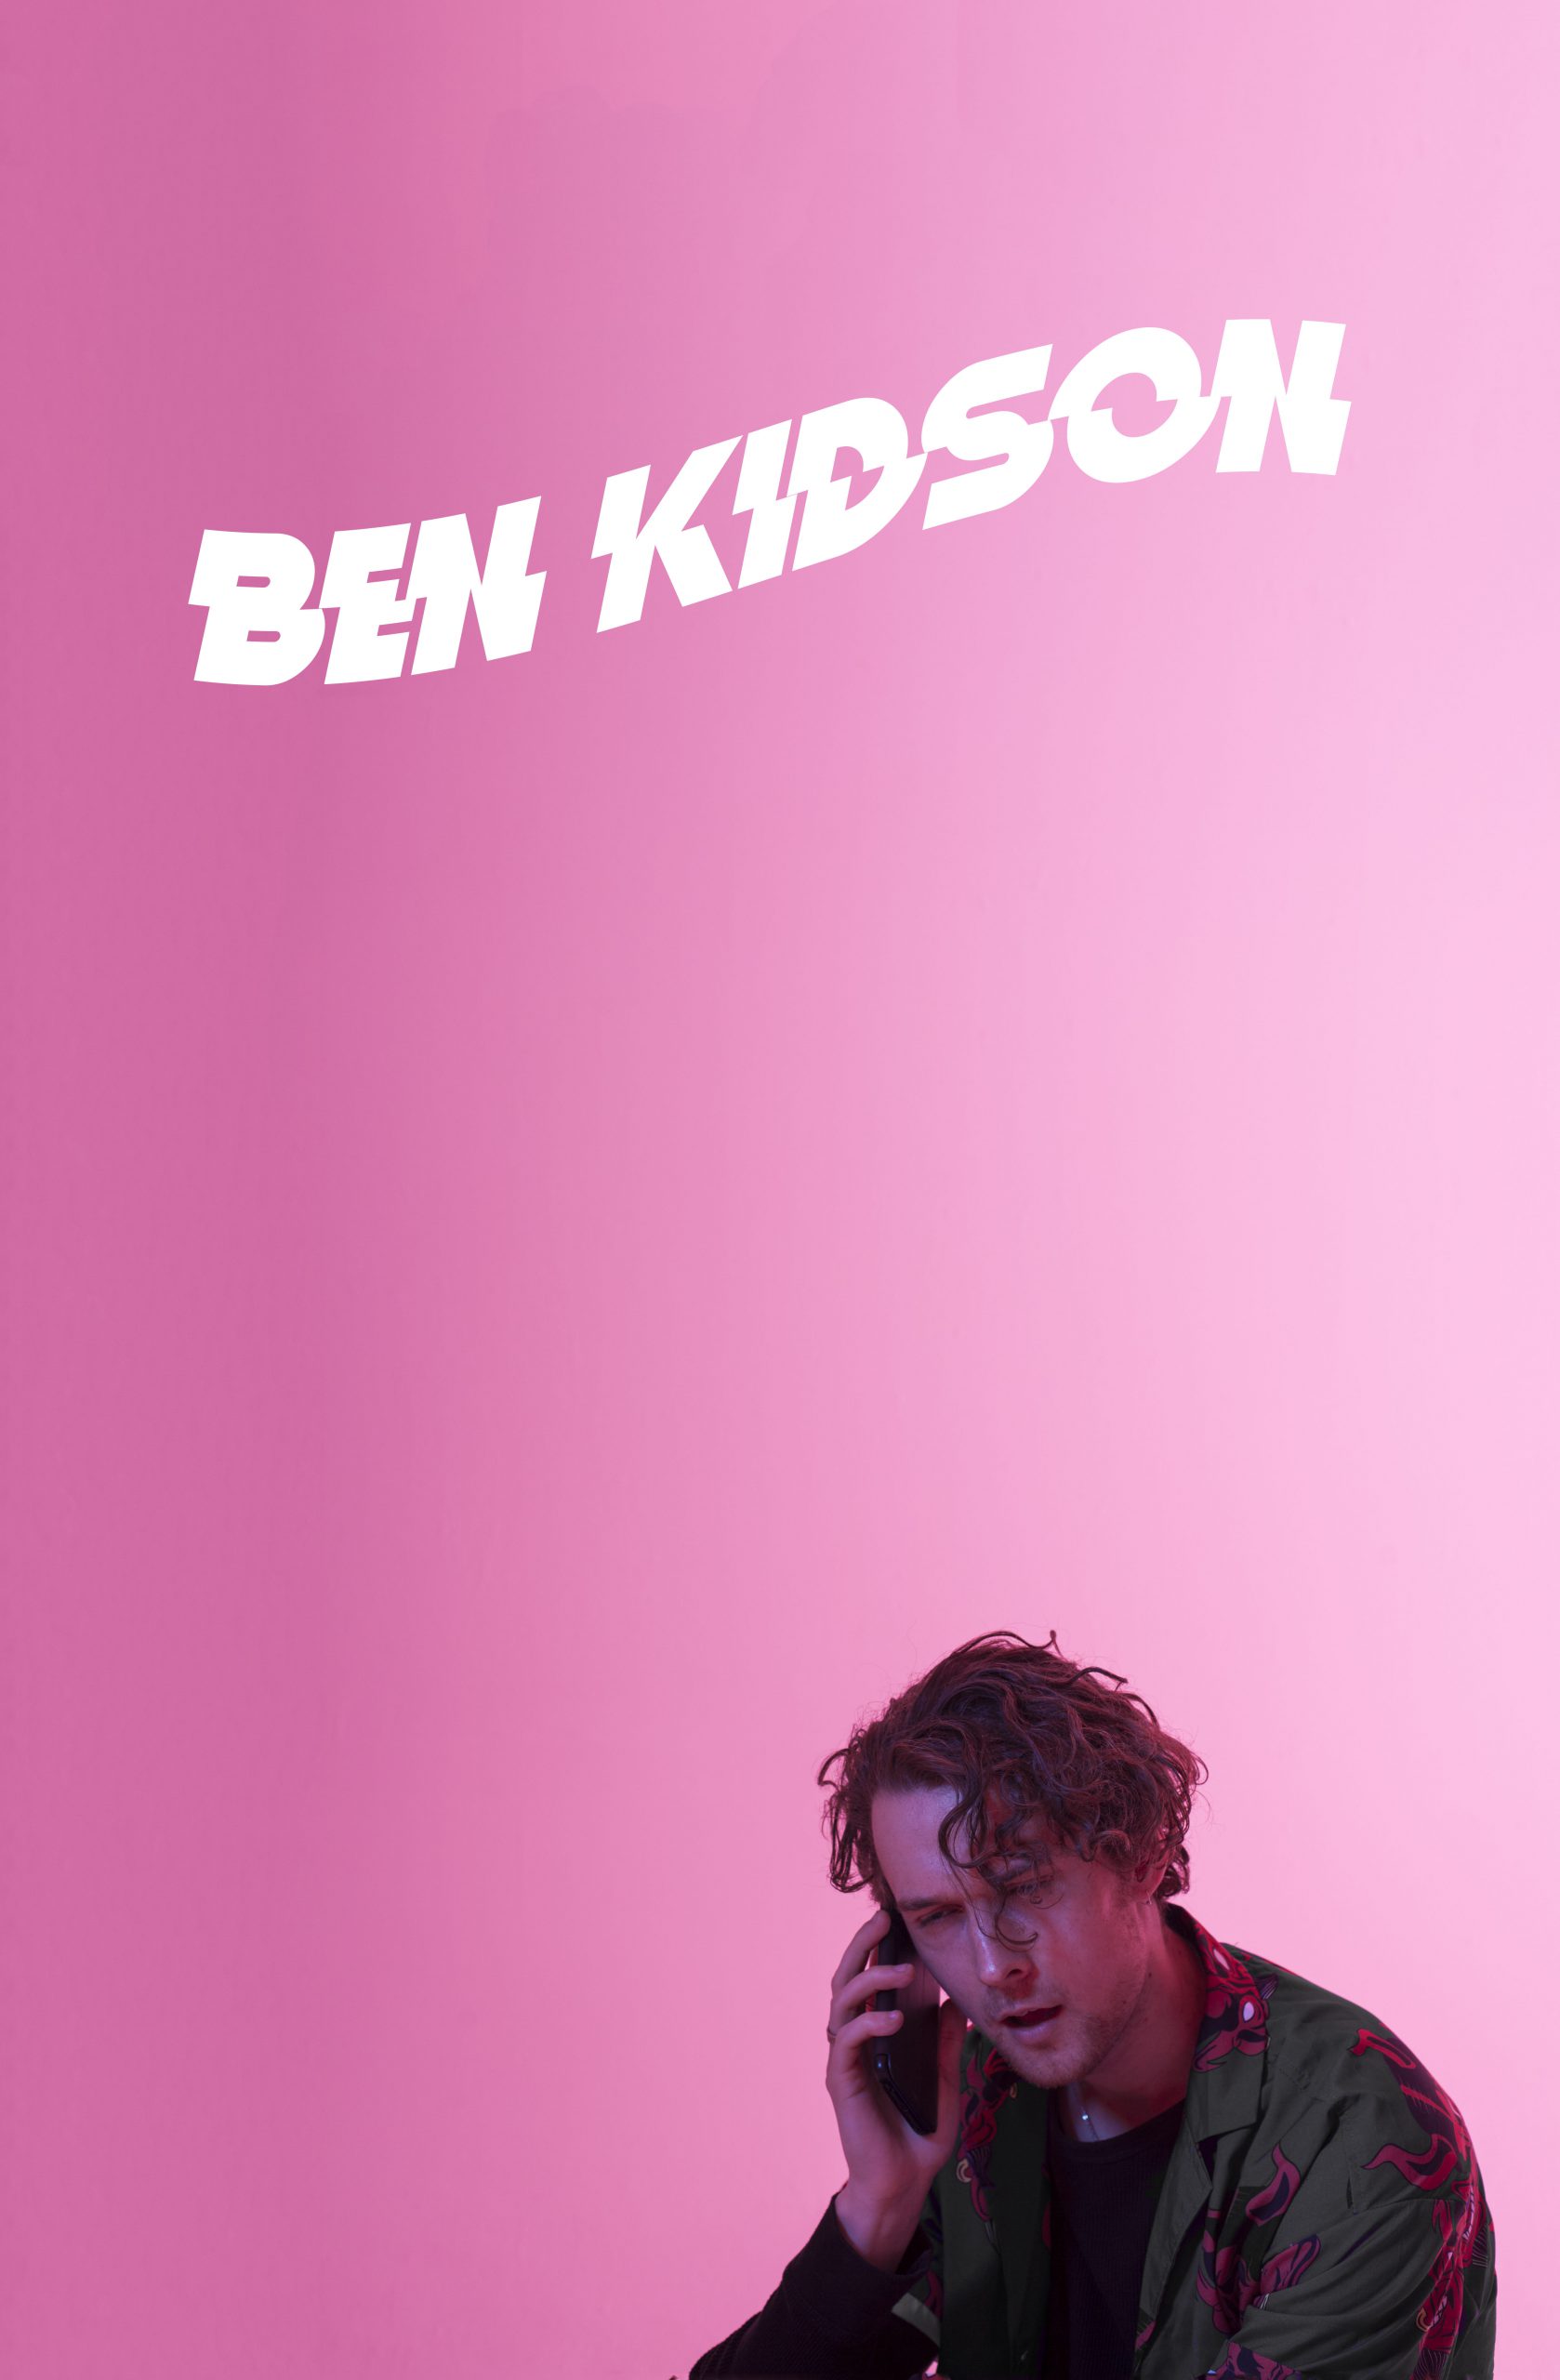 Ben Kidson